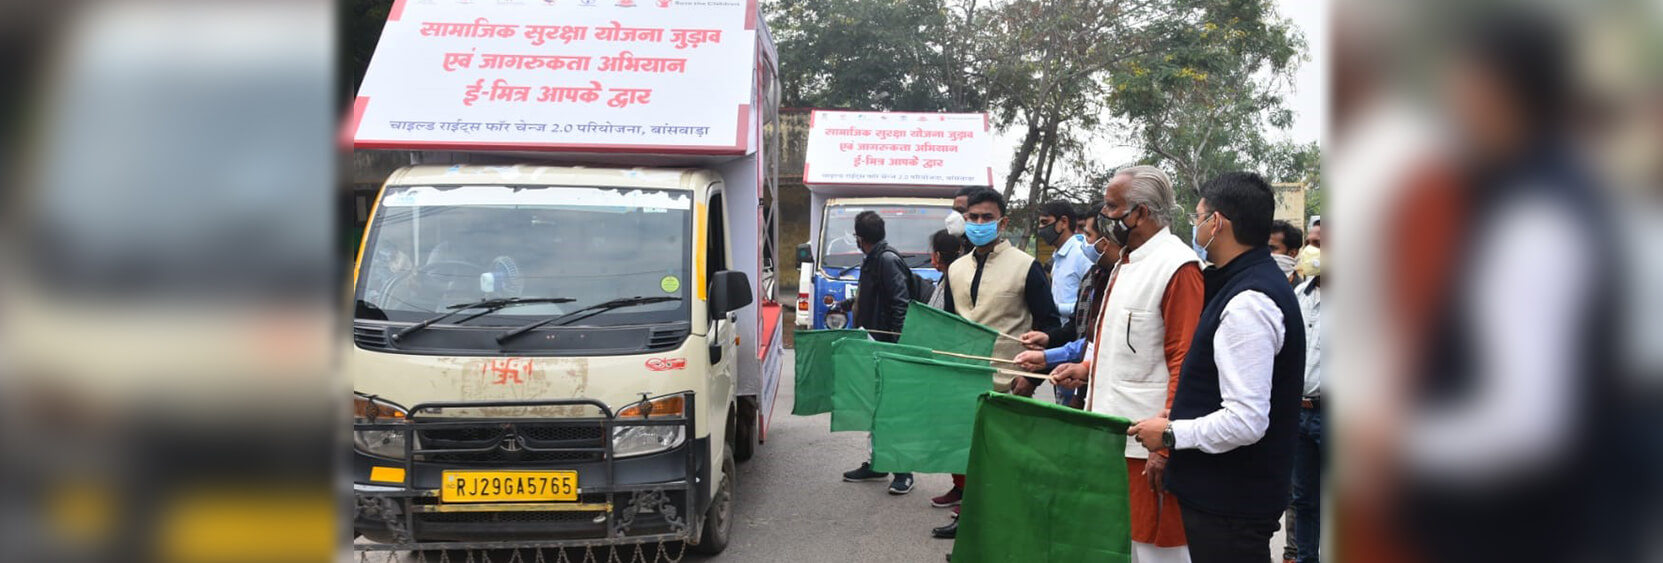 E-Mitra: A Social Protection Camp Drive at Doorstep Launched in Banswara, Rajasthan